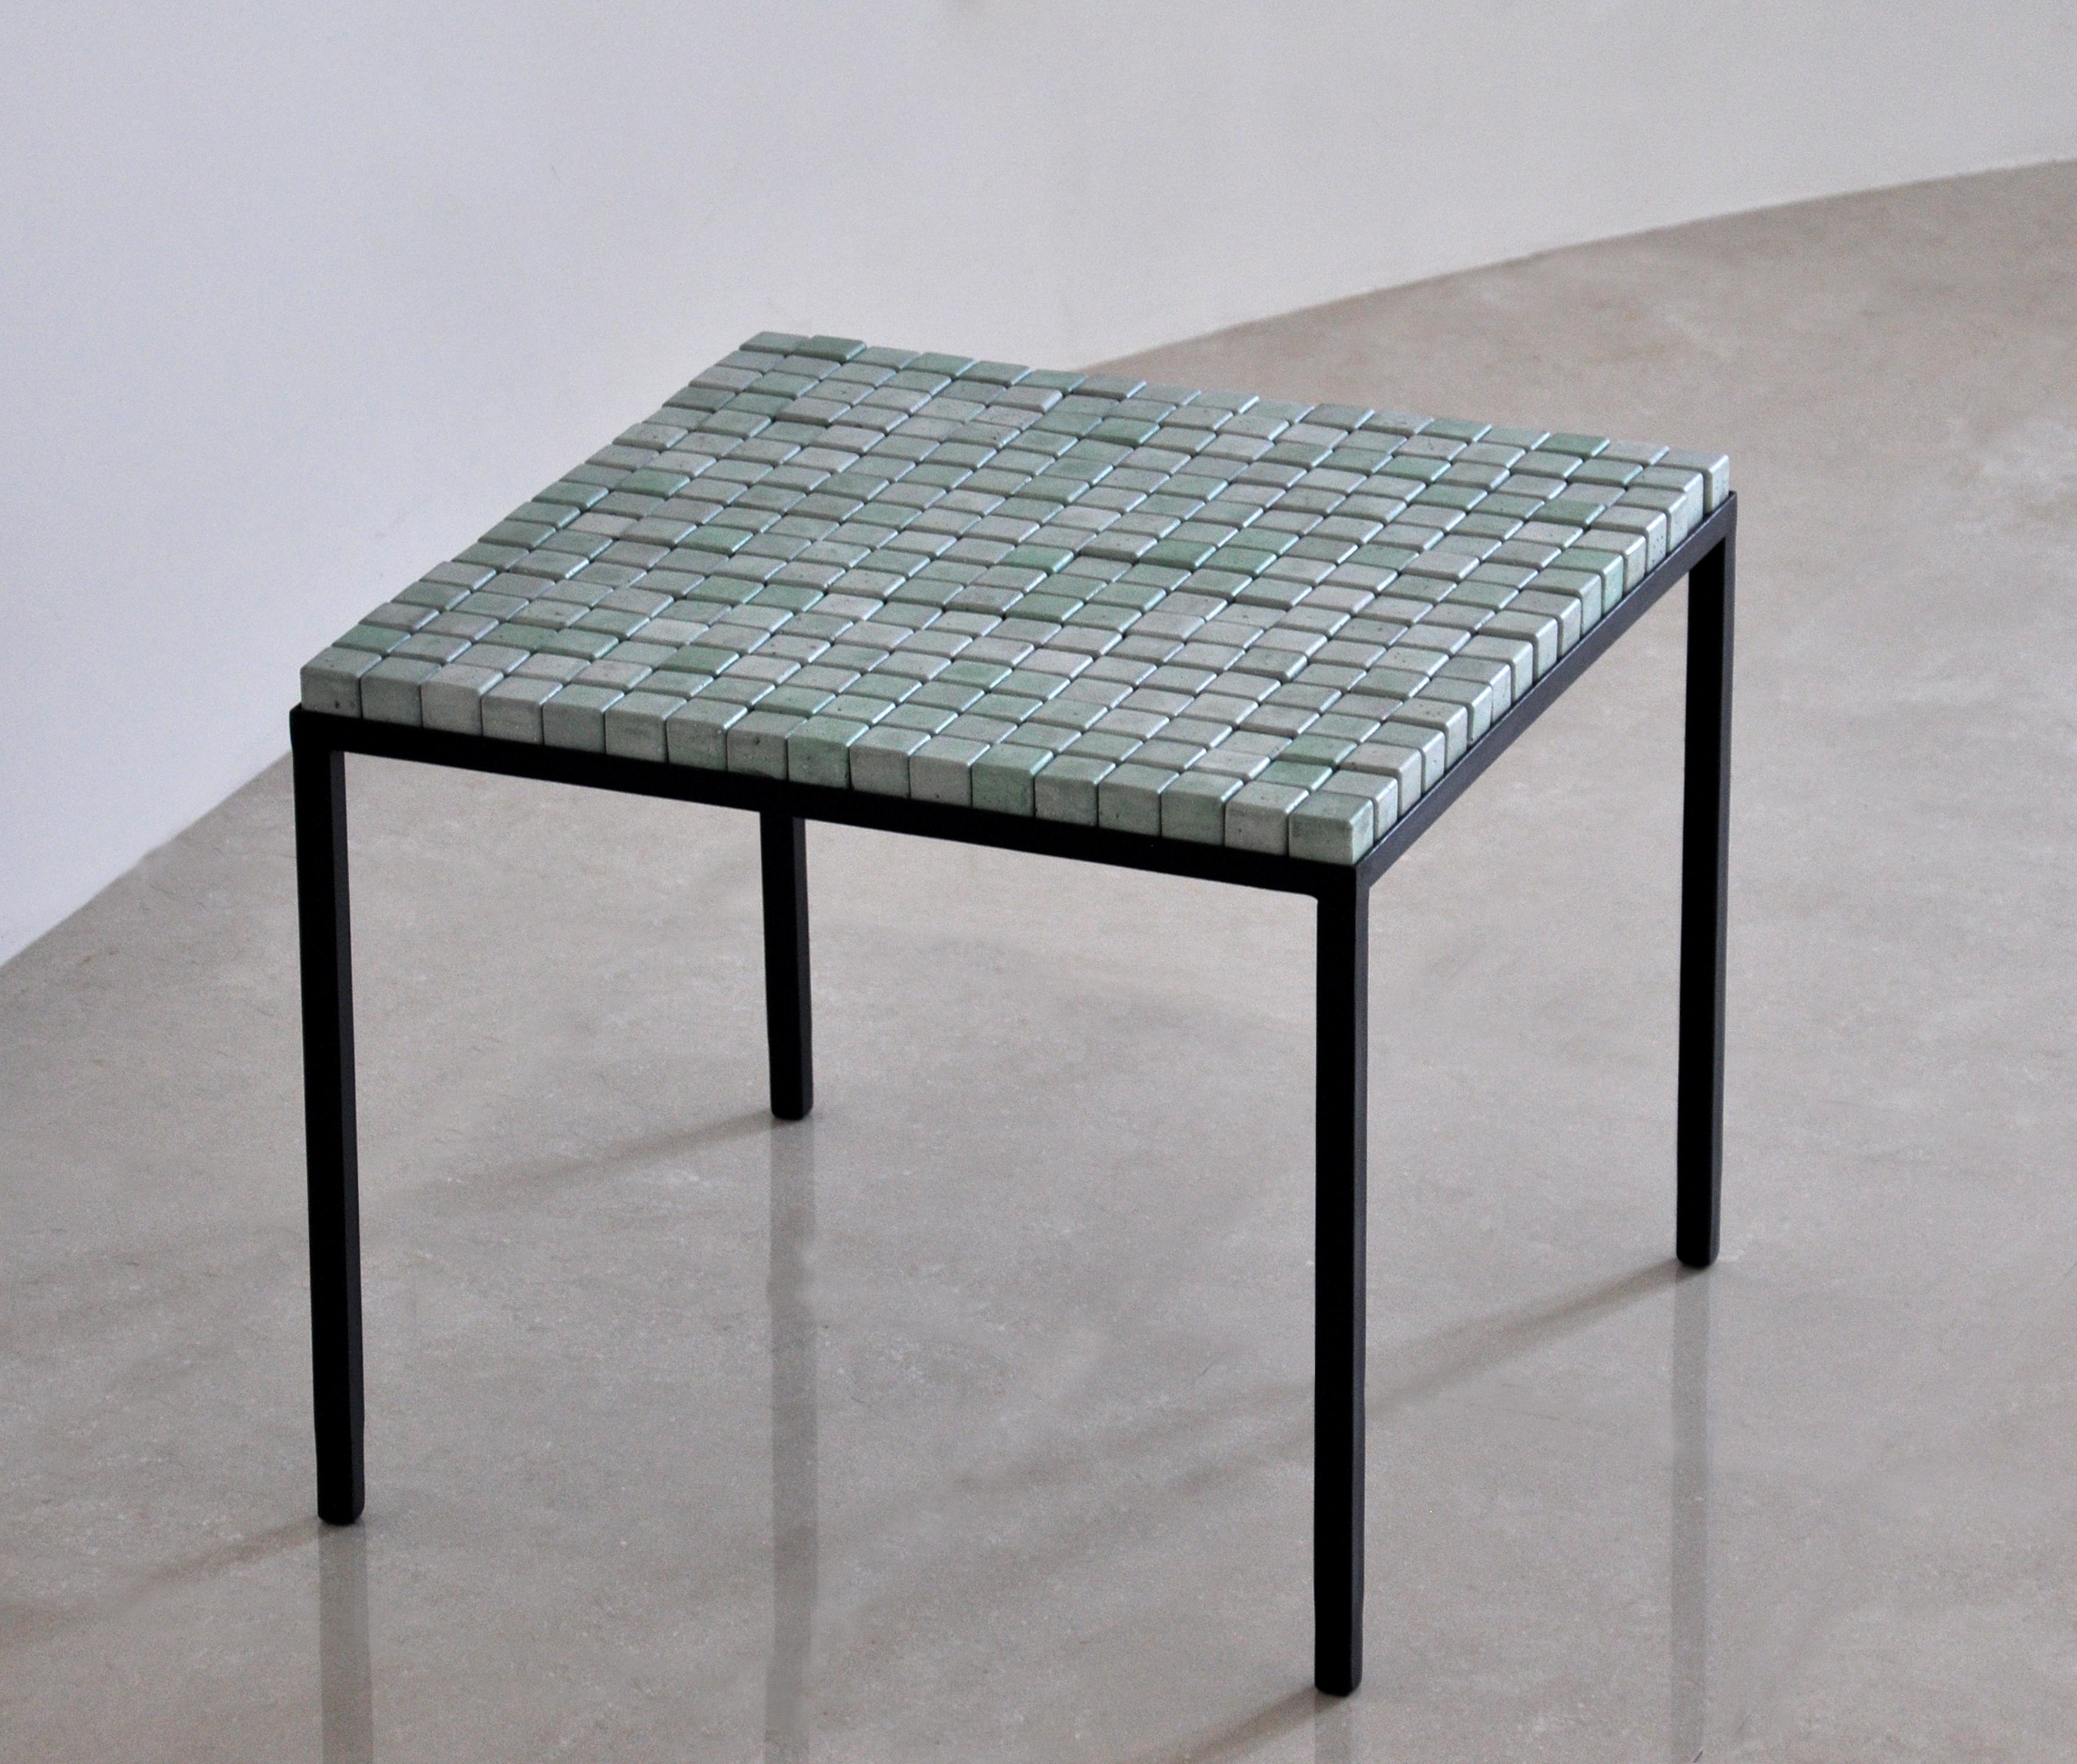 Table à cubes en béton vert (turquoise) cc mint de Miriam Loellmann 
Édition de 10 exemplaires. 
Signé.
MATERIAL : béton coloré, acier (peint à la main), cuir.
Dimensions : 46,5 x 56,5 x 56,5 cm : 46,5 x 56,5 x 56,5 cm
Poids : 22 kg

Les cubes sont